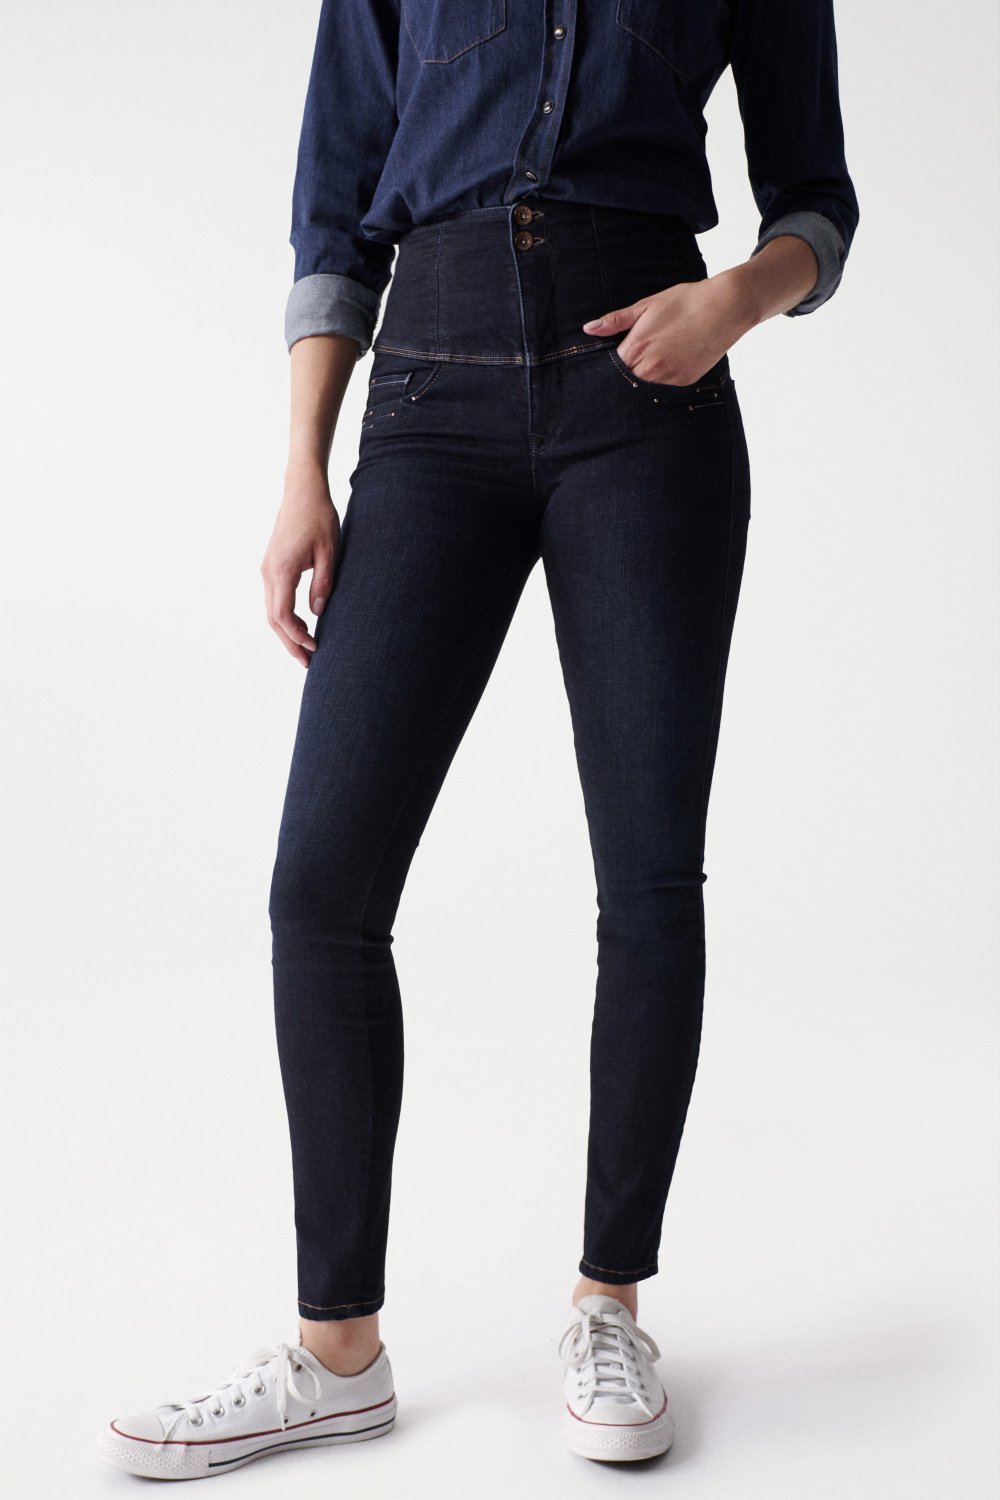 Diva skinny jeans with pocket detail - Salsa